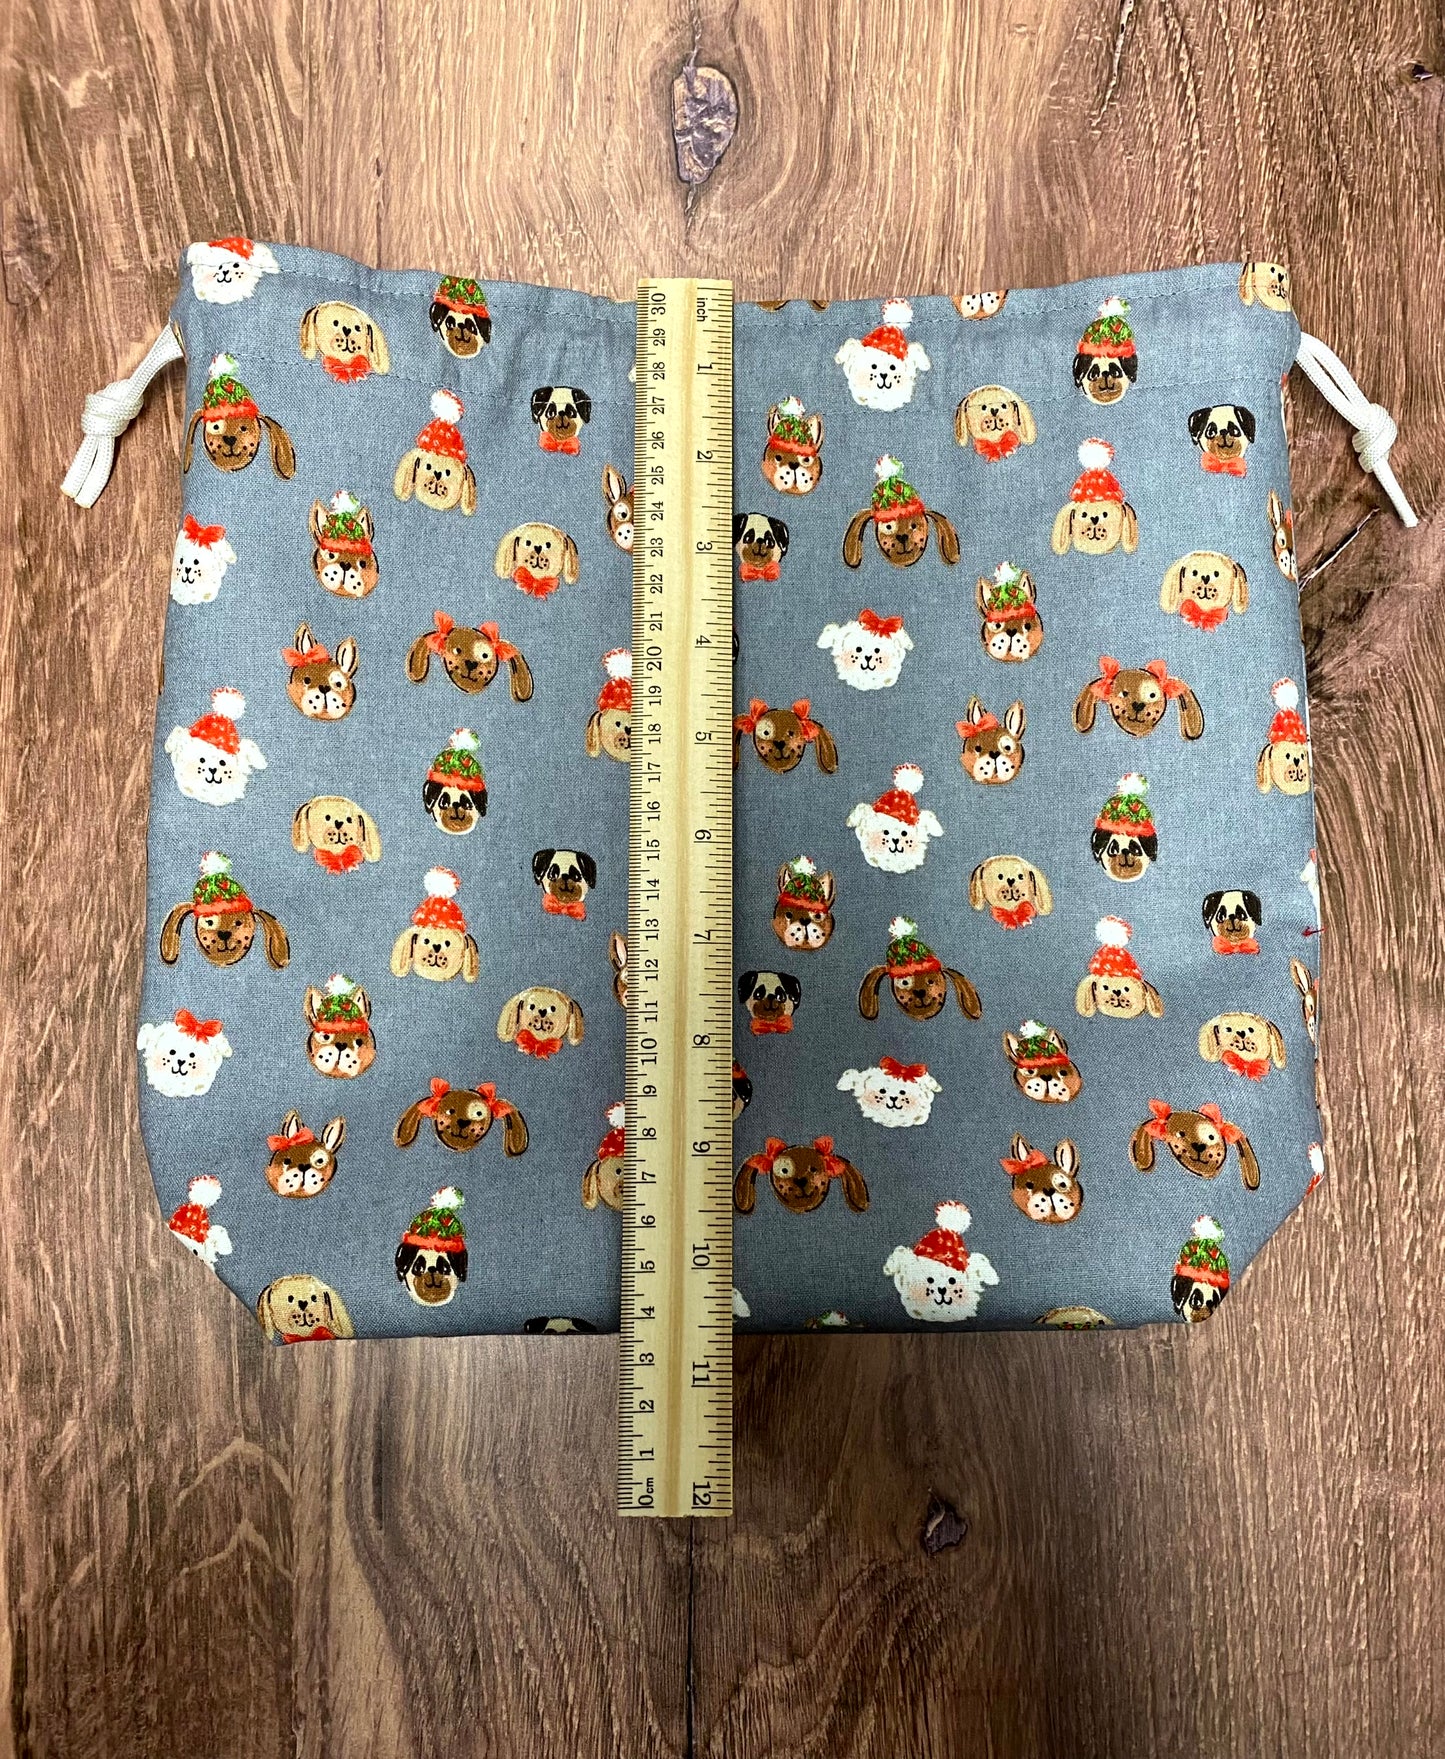 Dog Project Bag - Handmade - Drawstring Bag – Crochet Bag - Knitting Bag - Cross Stitch Bag - Christmas - Pug - French Bulldog